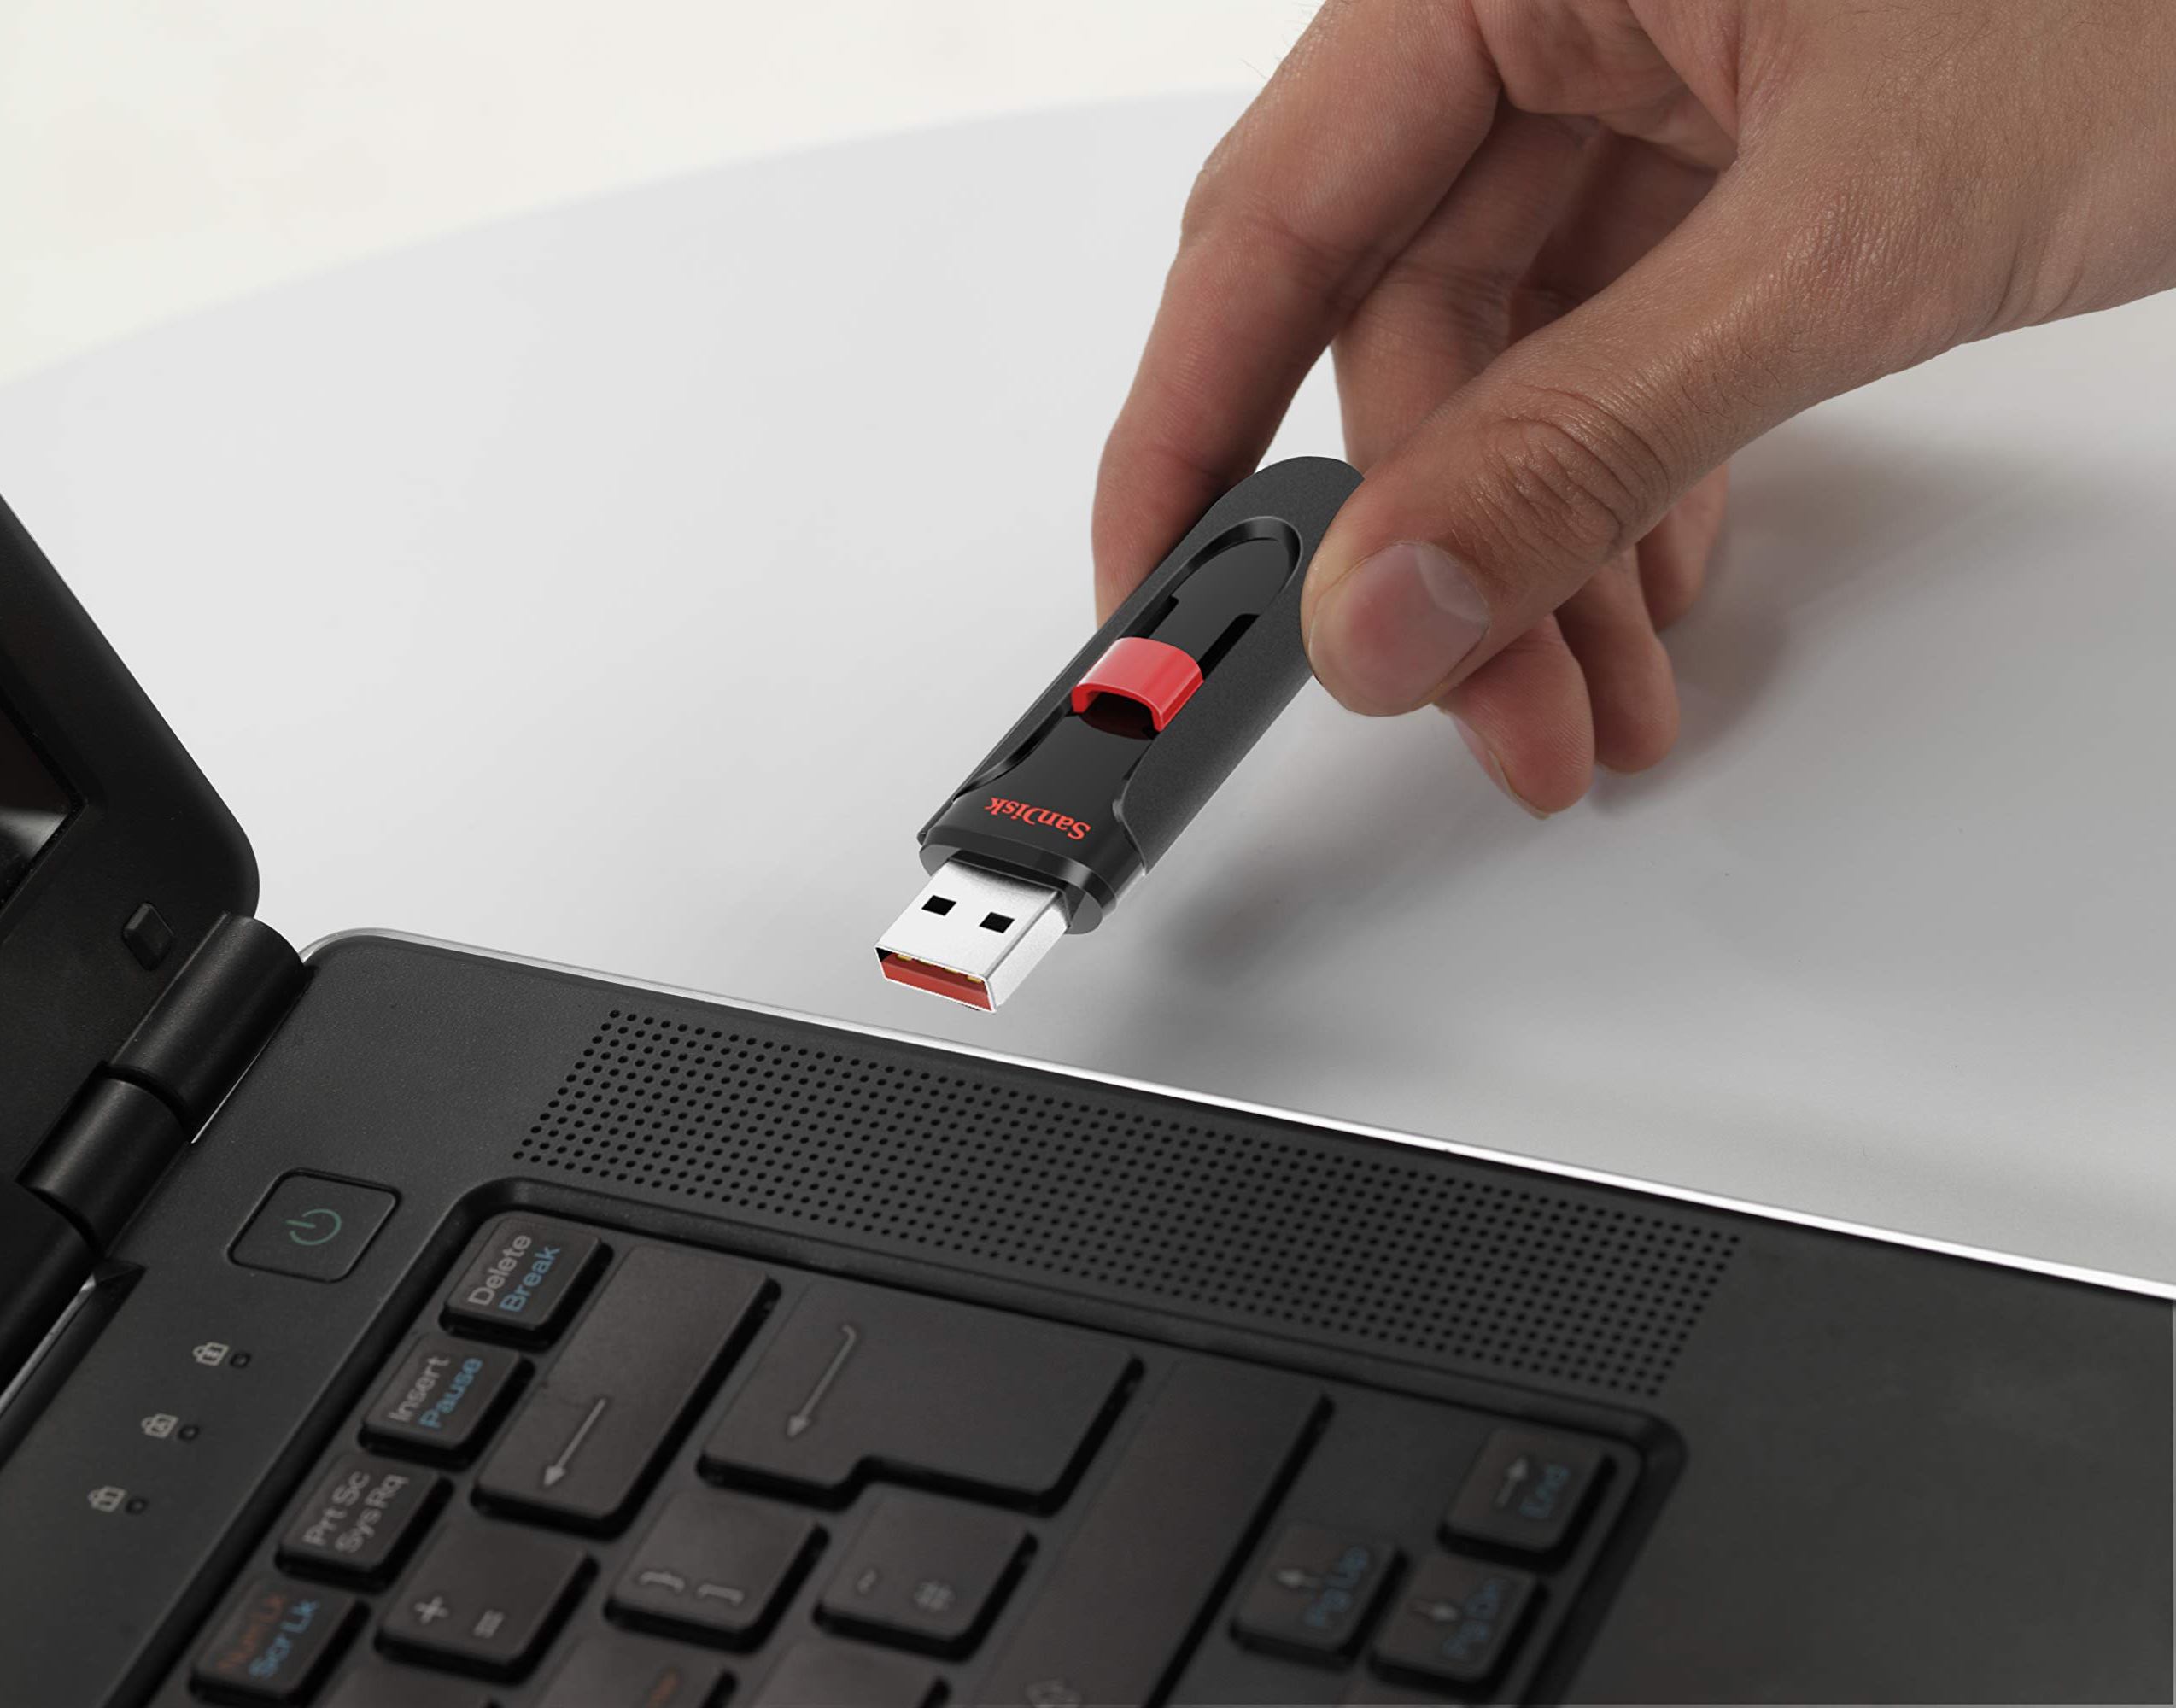 Stylový USB flashdisk SanDisk Cruzer Glide o kapacitě 256 GB nabízí snadný a bezpečný způsob sdílení, přesunu a zálohování vašich nejdůležitějších souborů.